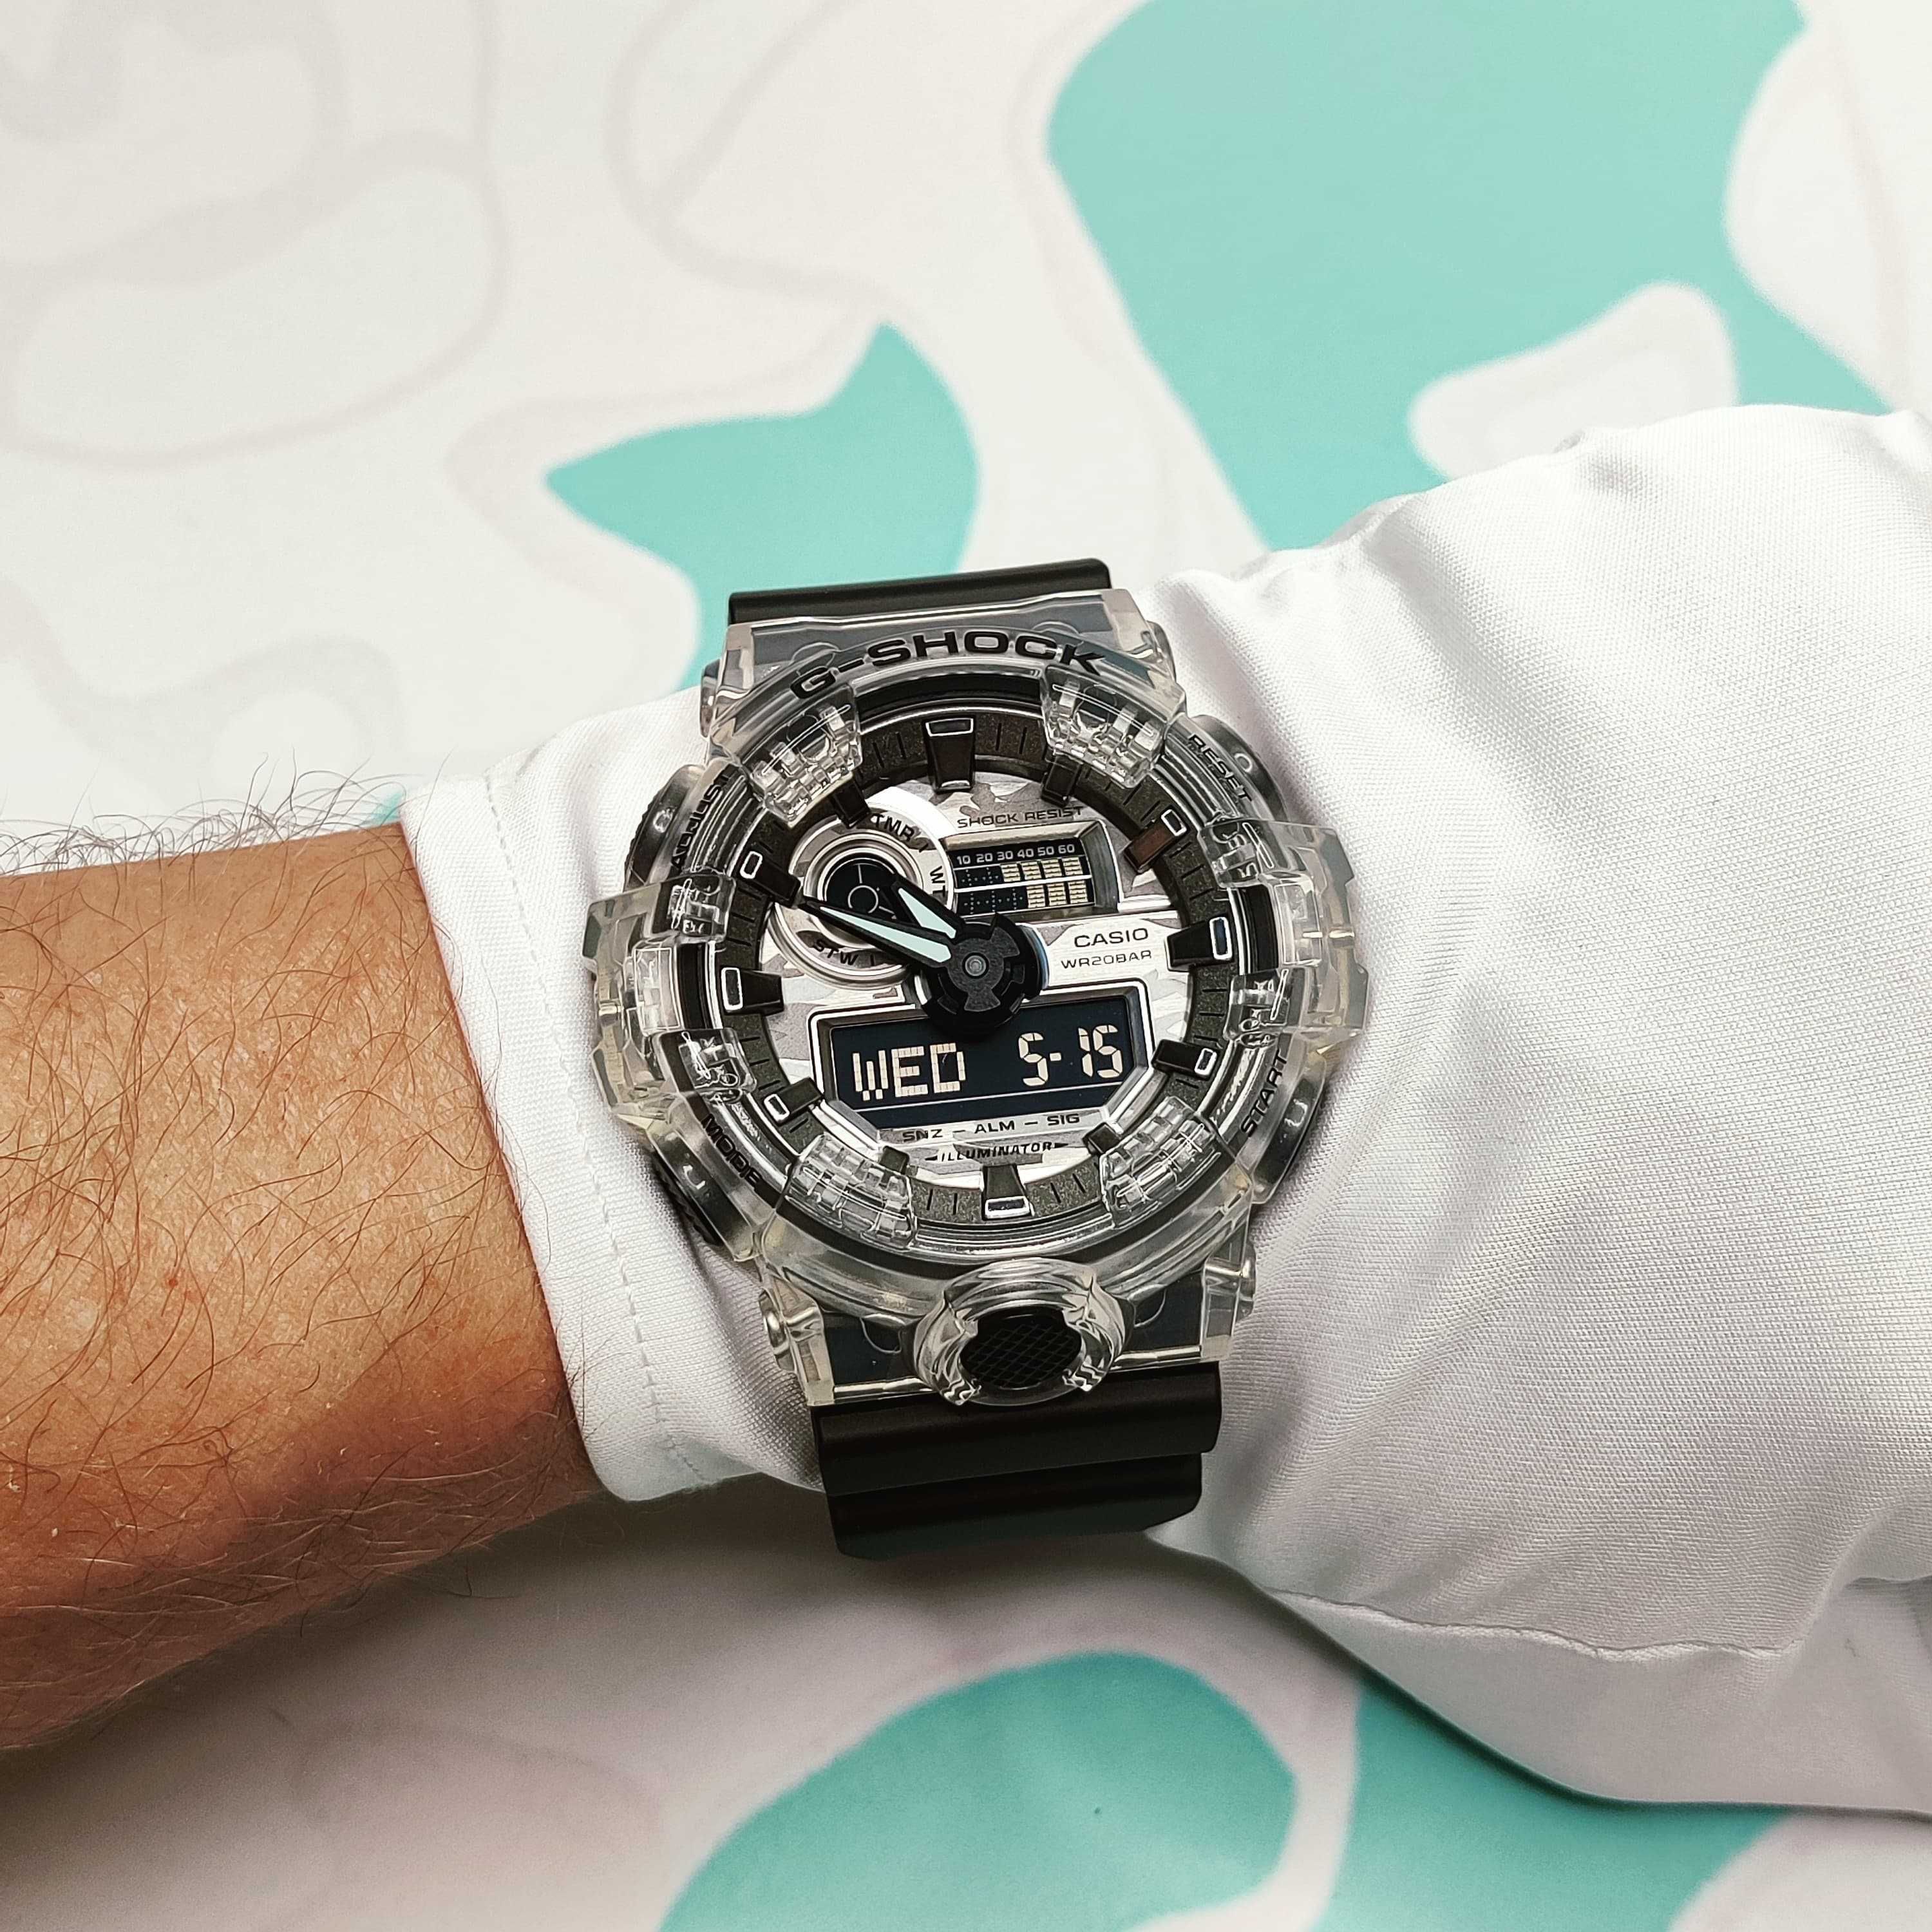 Casio G-Shock GA-700SKC-1A наручные часы Skeleton прозрачные оригинал